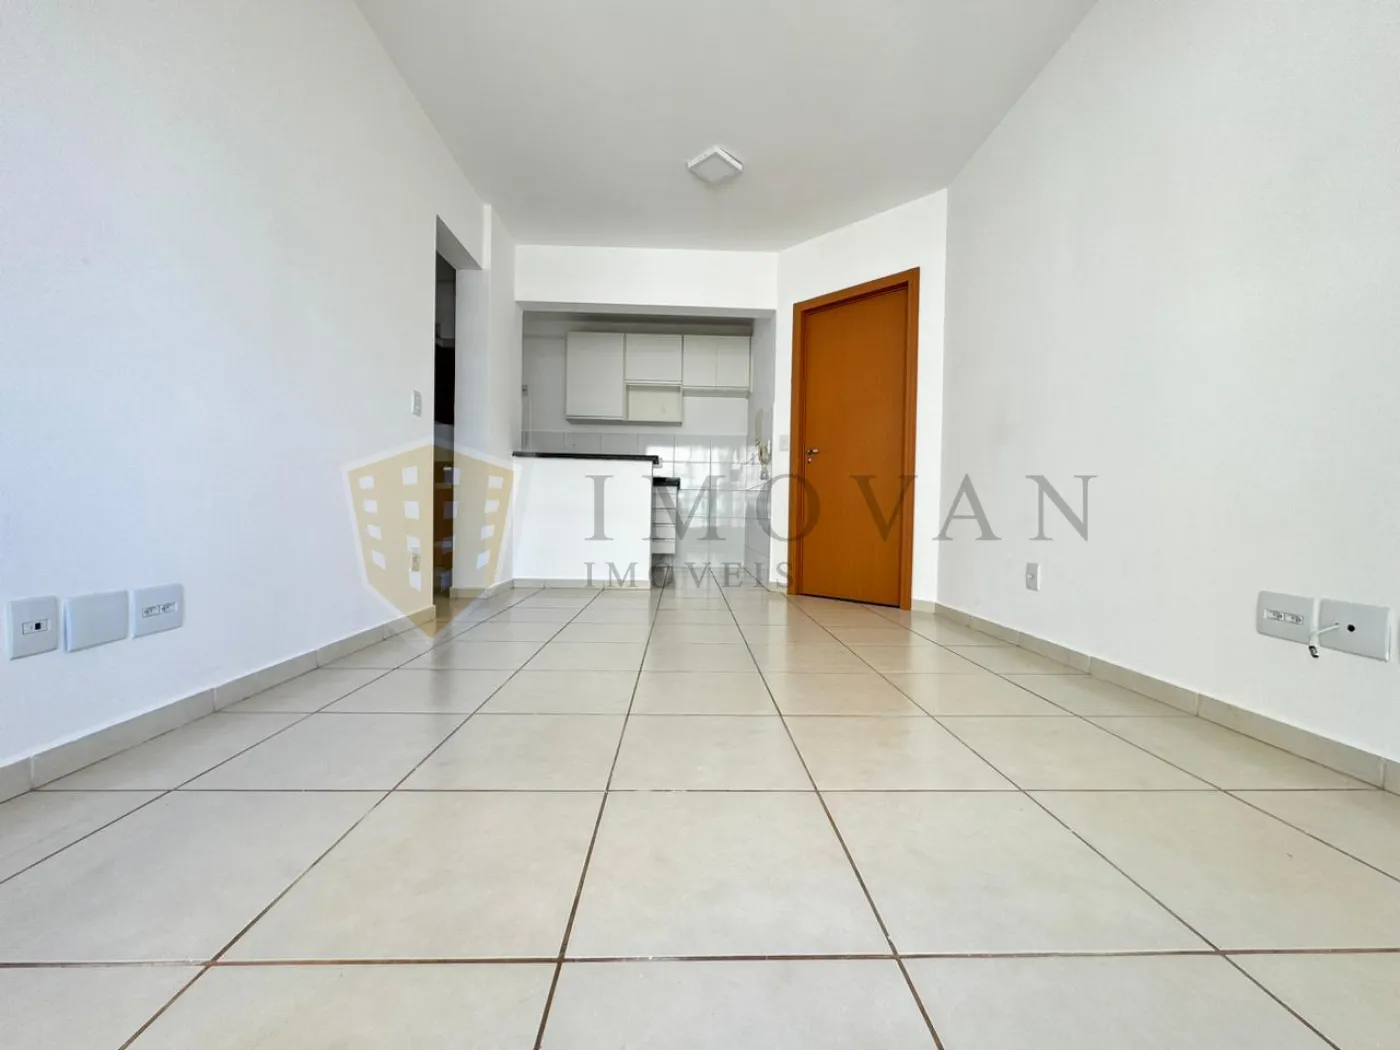 Alugar Apartamento / Padrão em Ribeirão Preto R$ 1.350,00 - Foto 3